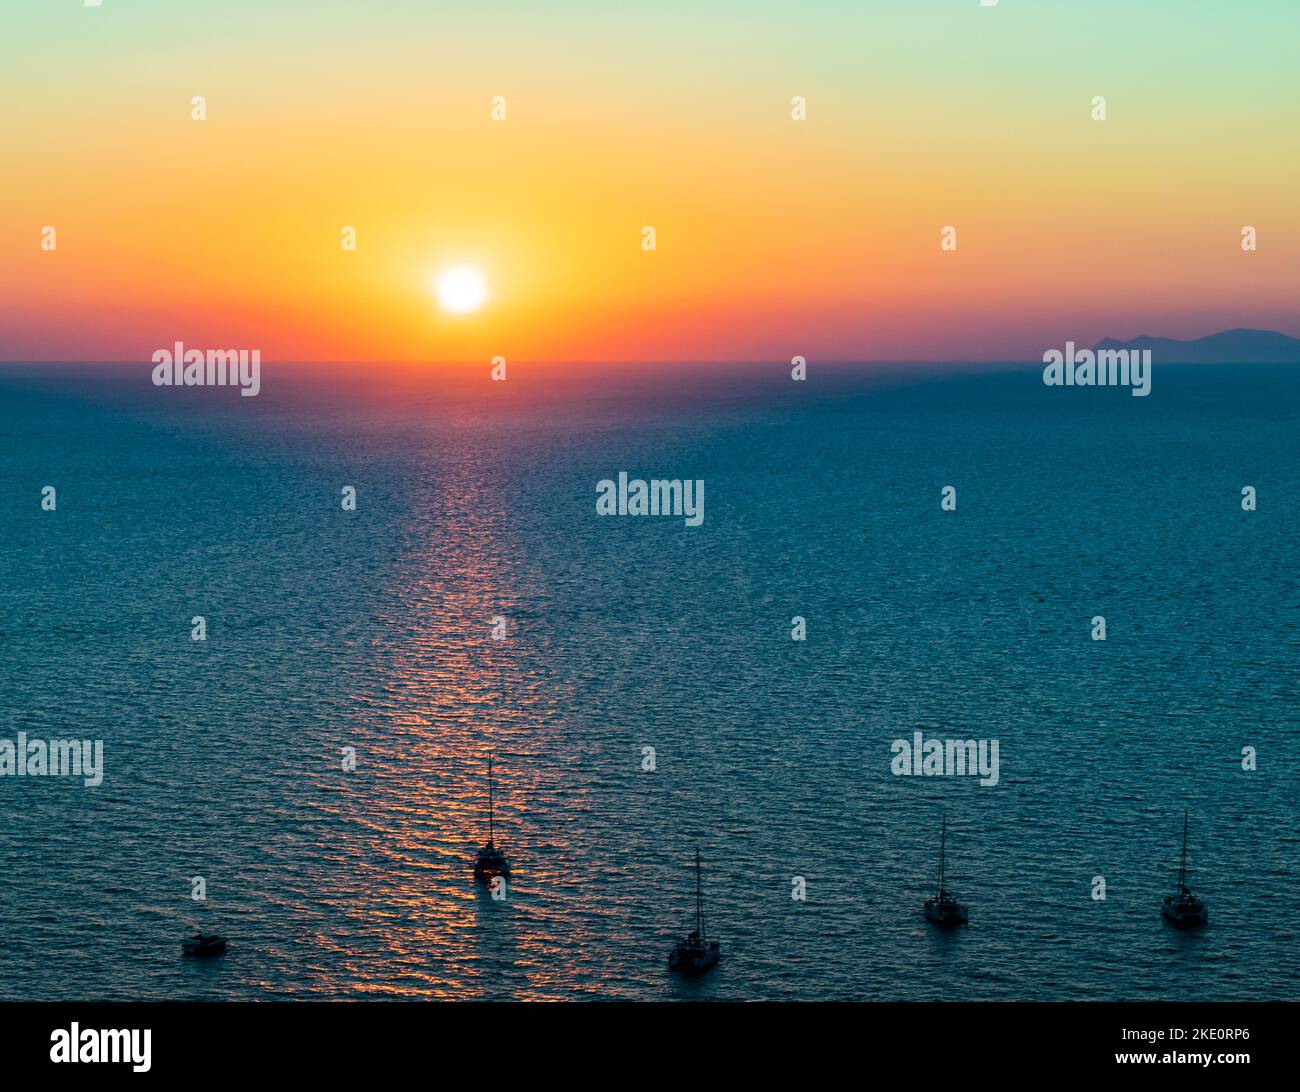 vista aérea del amanecer en mar abierto y tranquilo. un barco lleva a muchos barcos a lo largo del reflejo de la luz del sol hacia un nuevo viaje para un nuevo comienzo de esperanza. Foto de stock